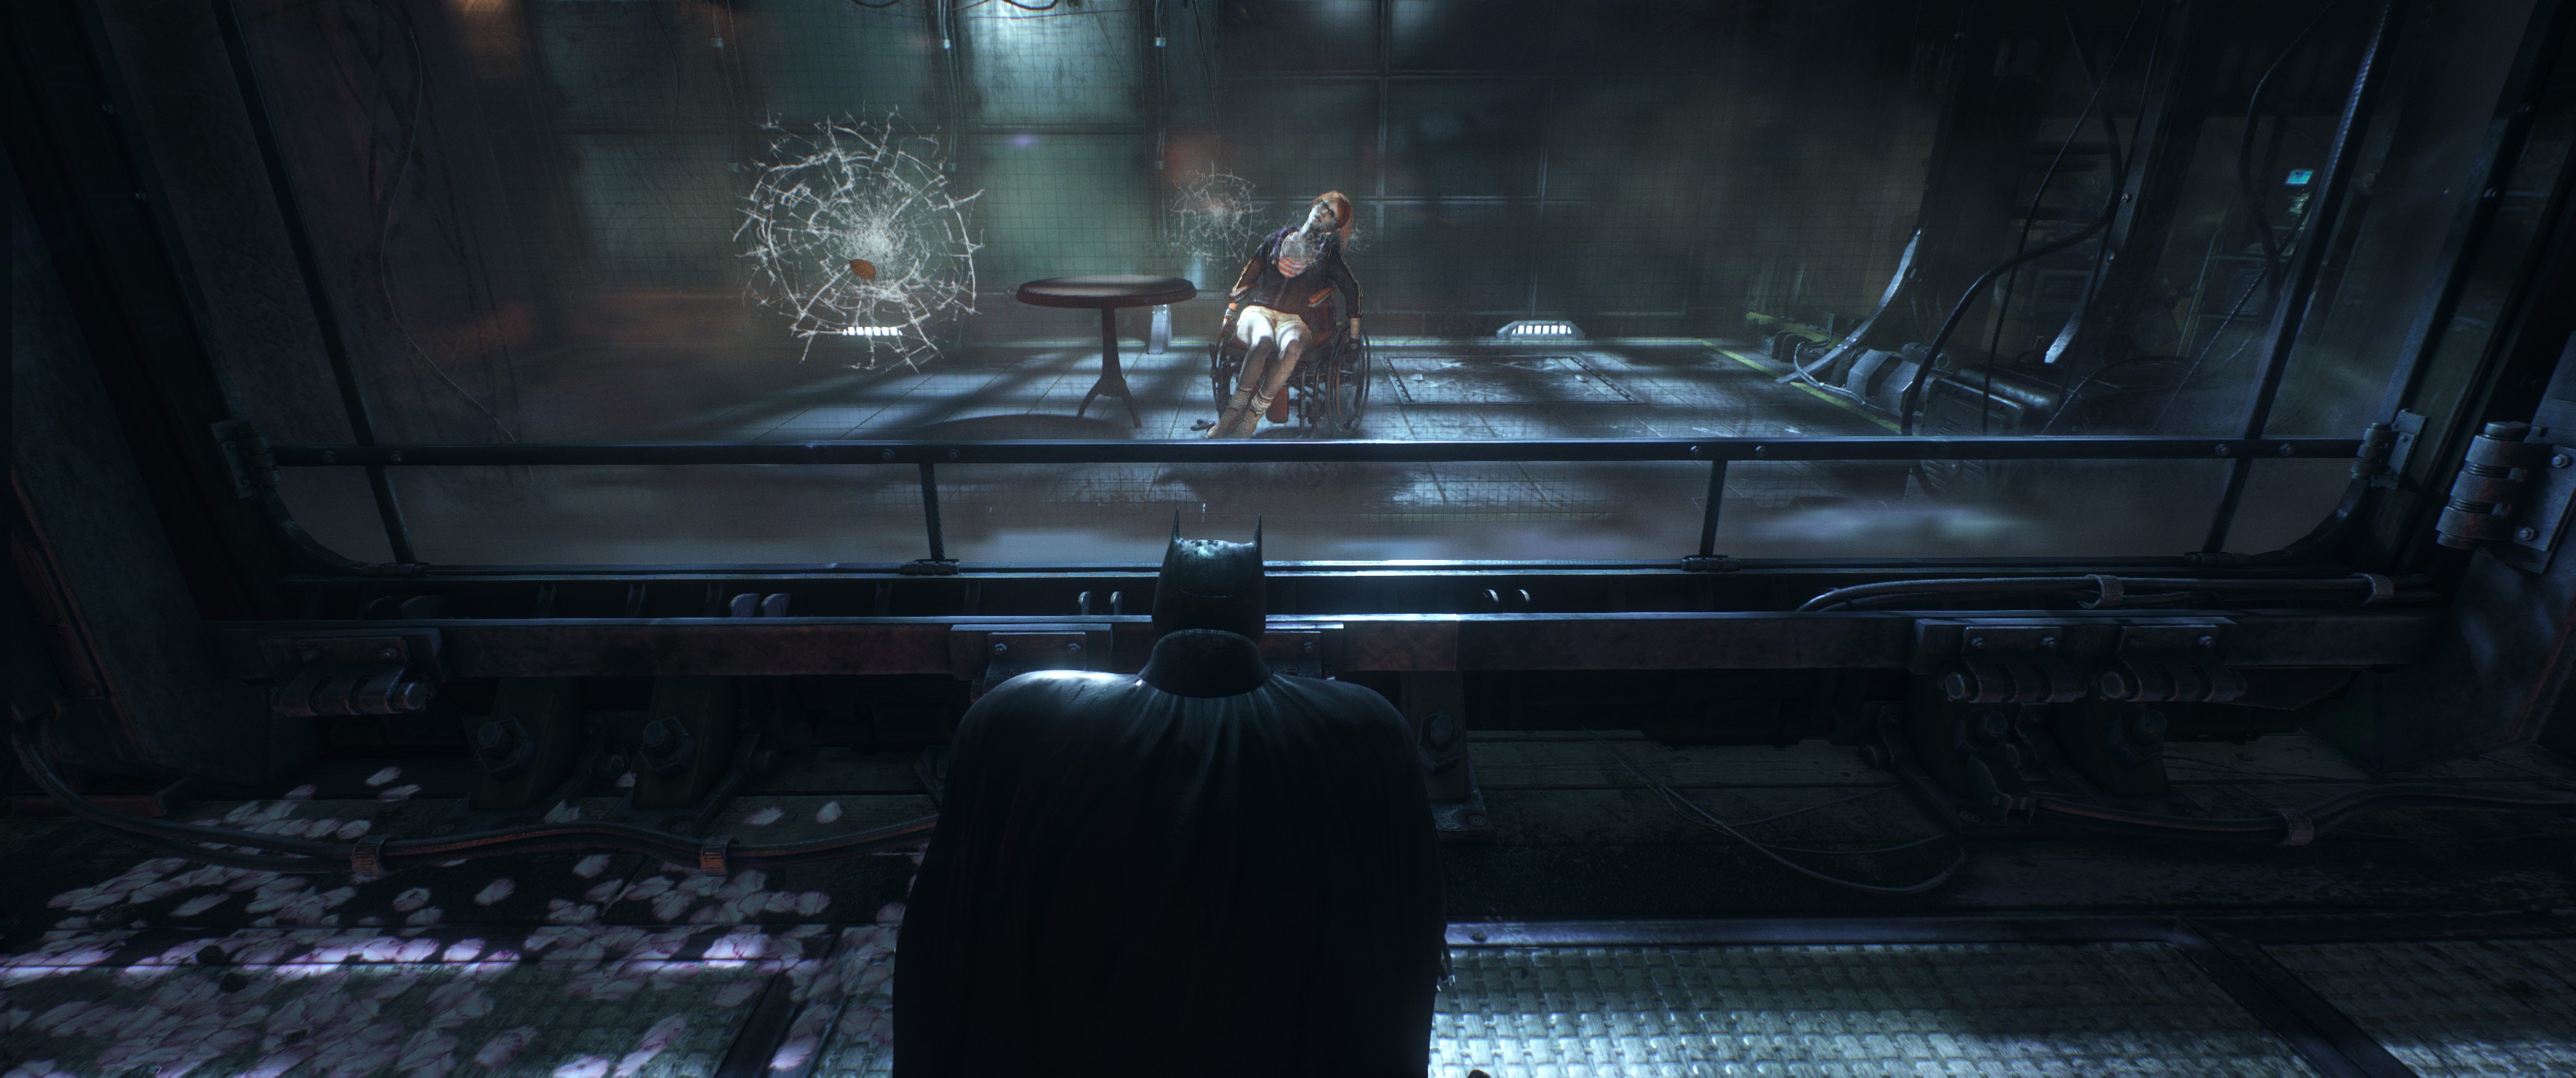 Batman Batman Arkham Knight Video Games Ultrawide 3440x1440